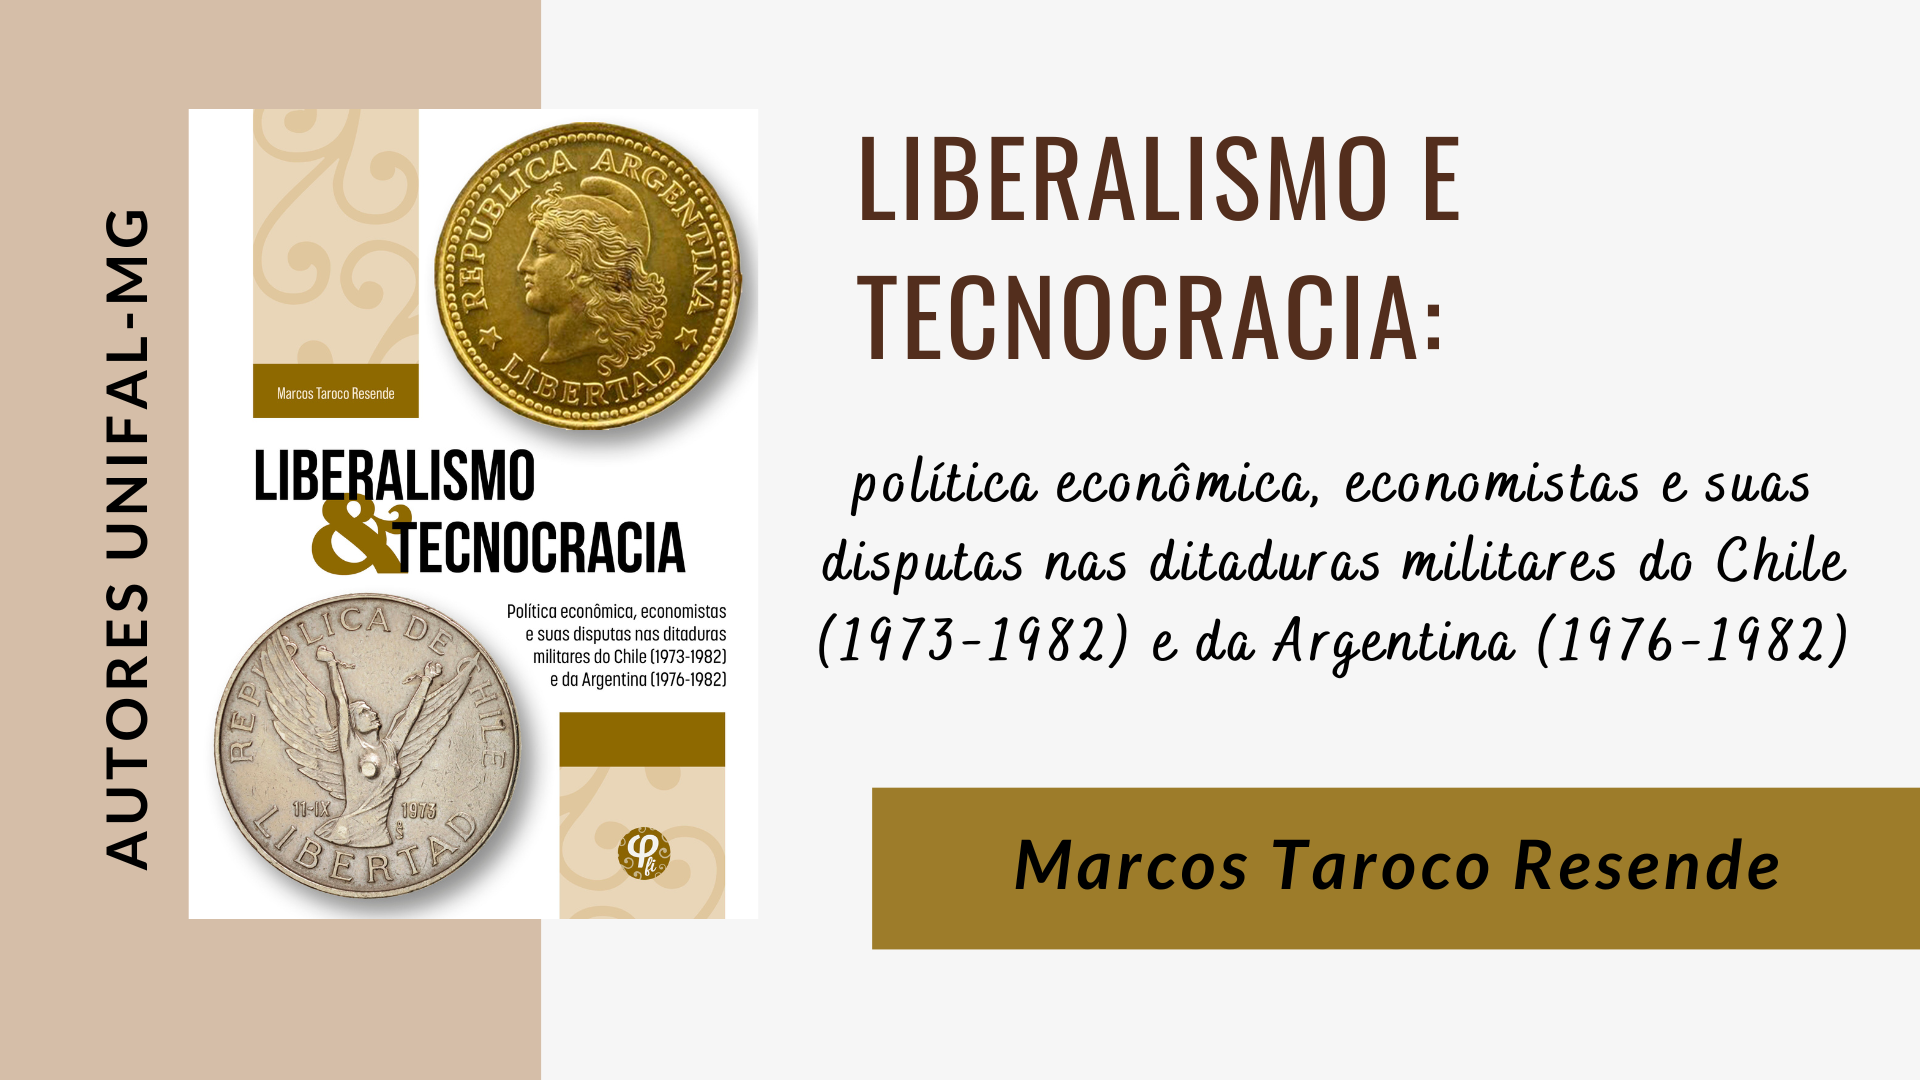 “Liberalismo e Tecnocracia: política econômica, economistas e suas disputas nas ditaduras militares do Chile (1973-1982) e da Argentina (1976-1982)” – Marcos Taroco Resende